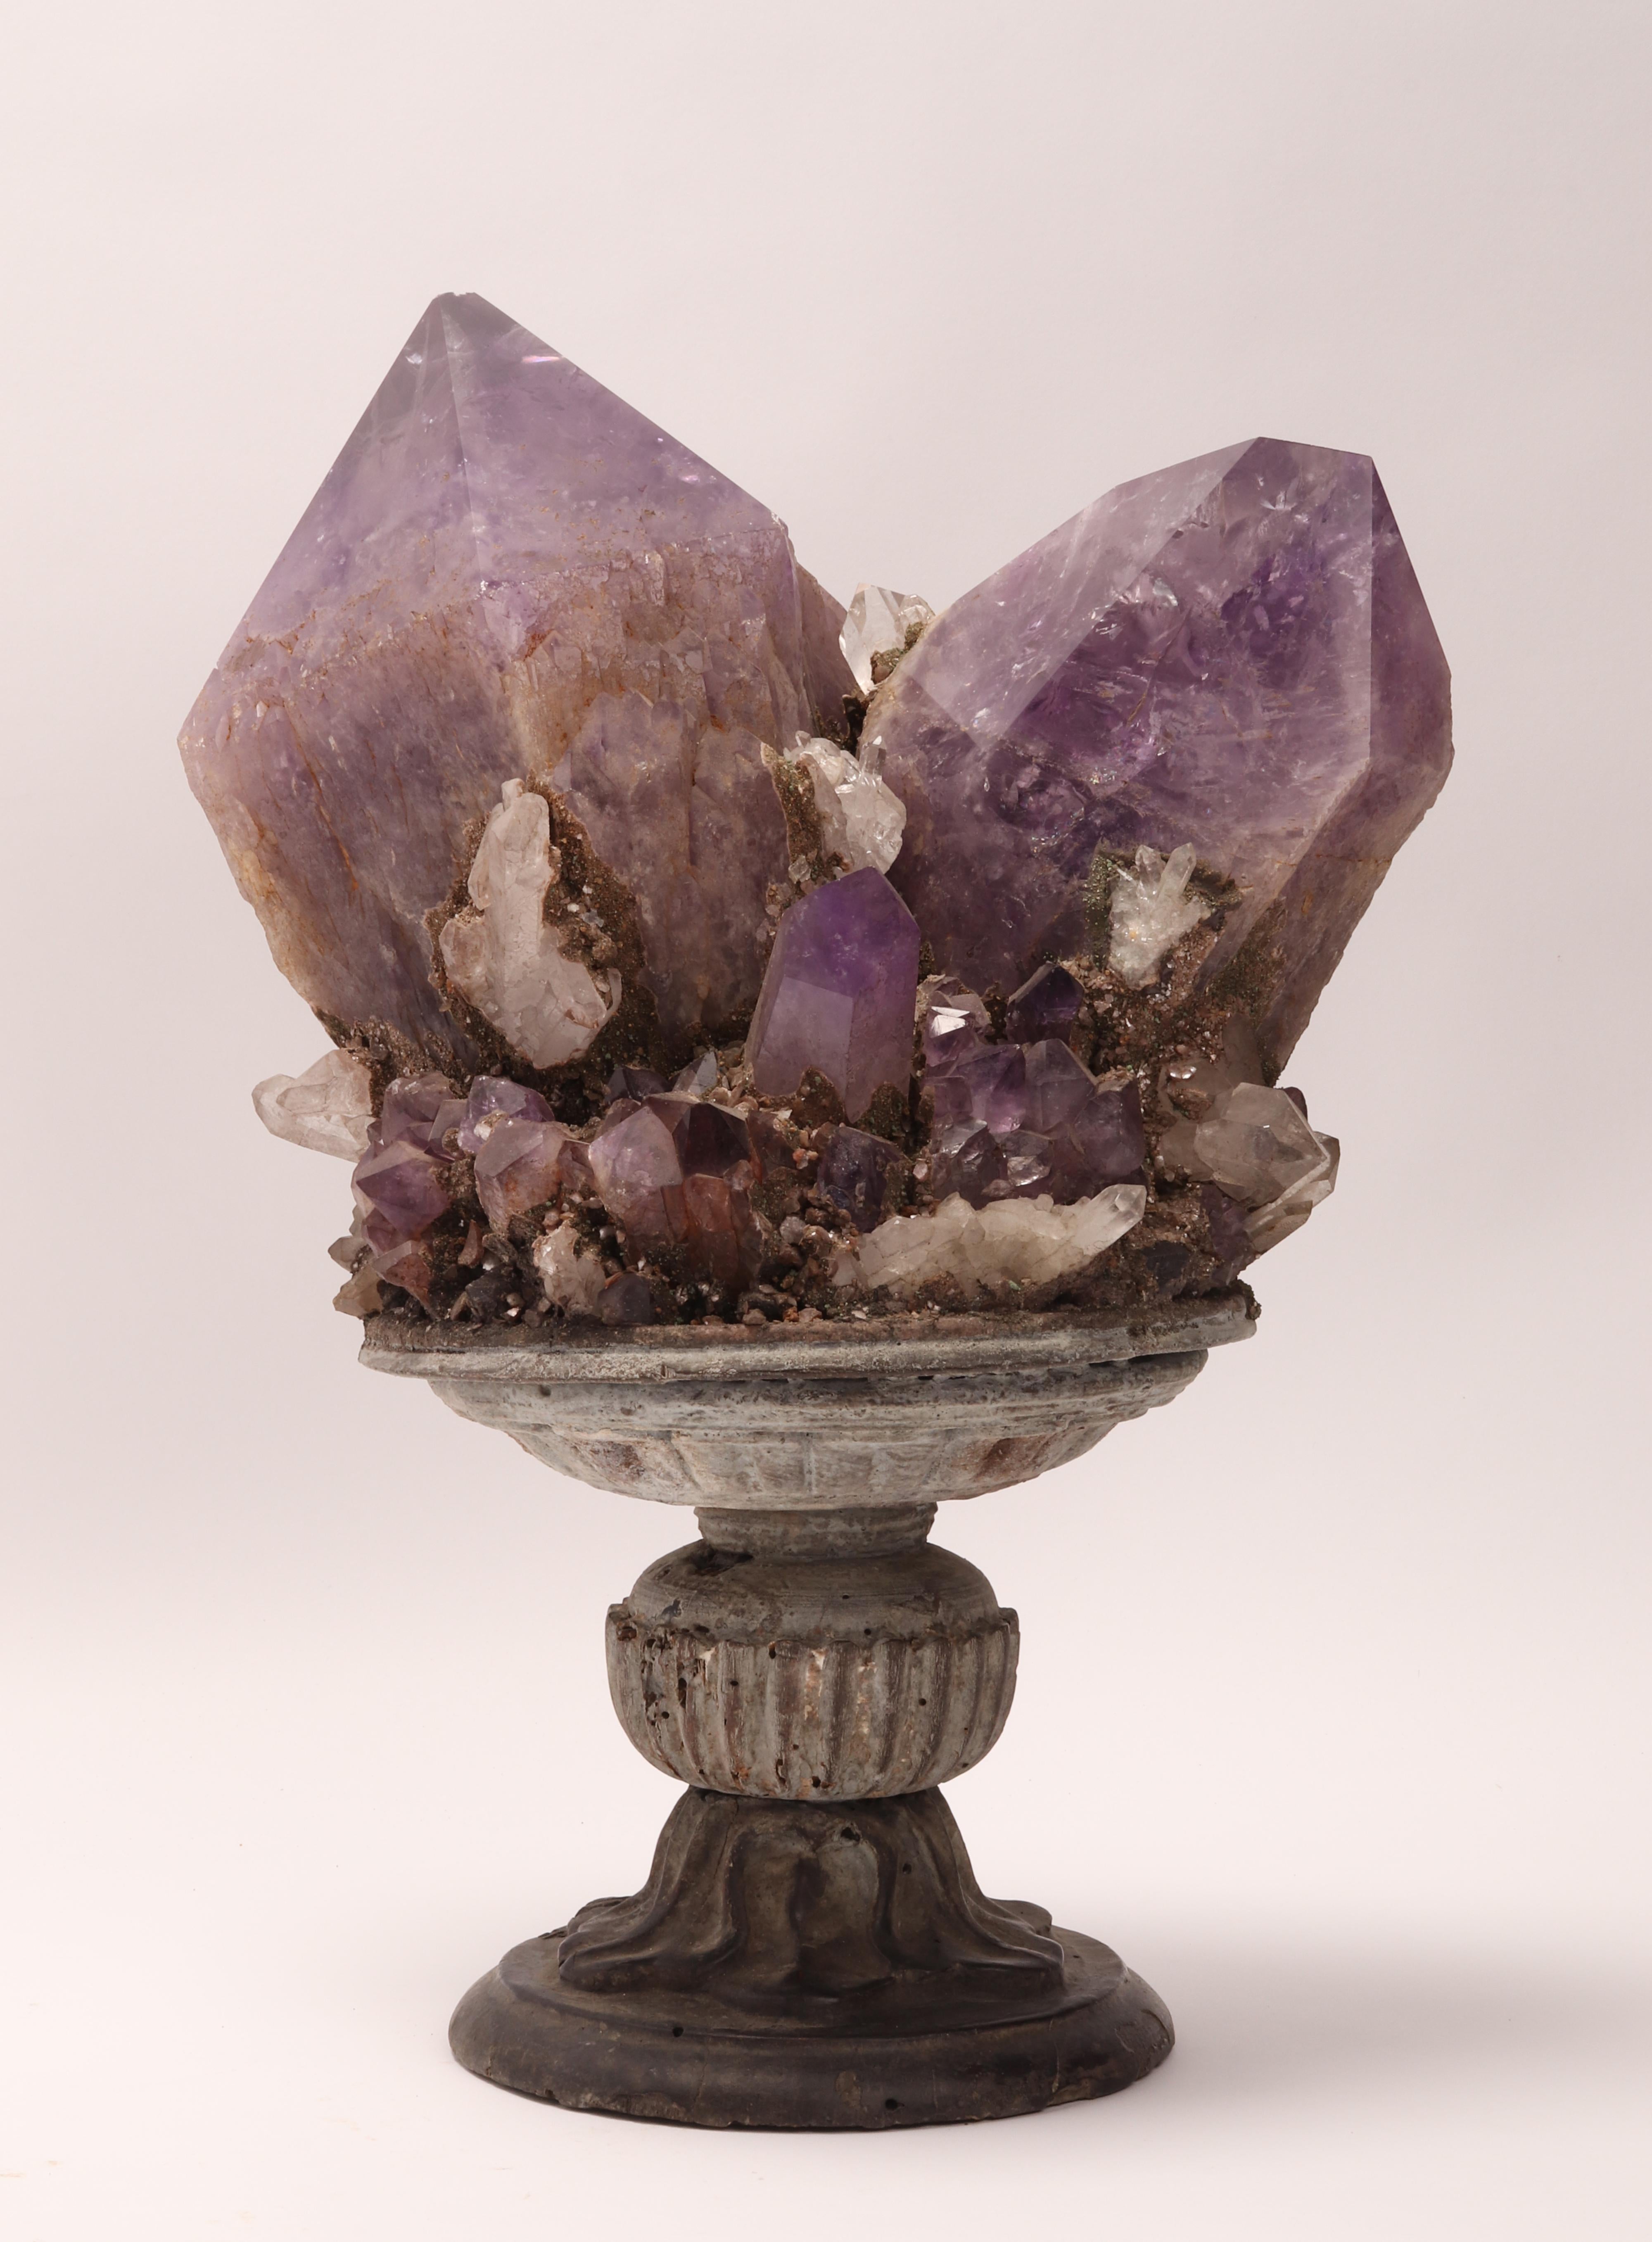 Naturalia Mineralienprobe. Eine Druse aus Amethyst- und Quarzkristallen, montiert auf einem Holzsockel in Form einer Vase. Italien 1880 ca.